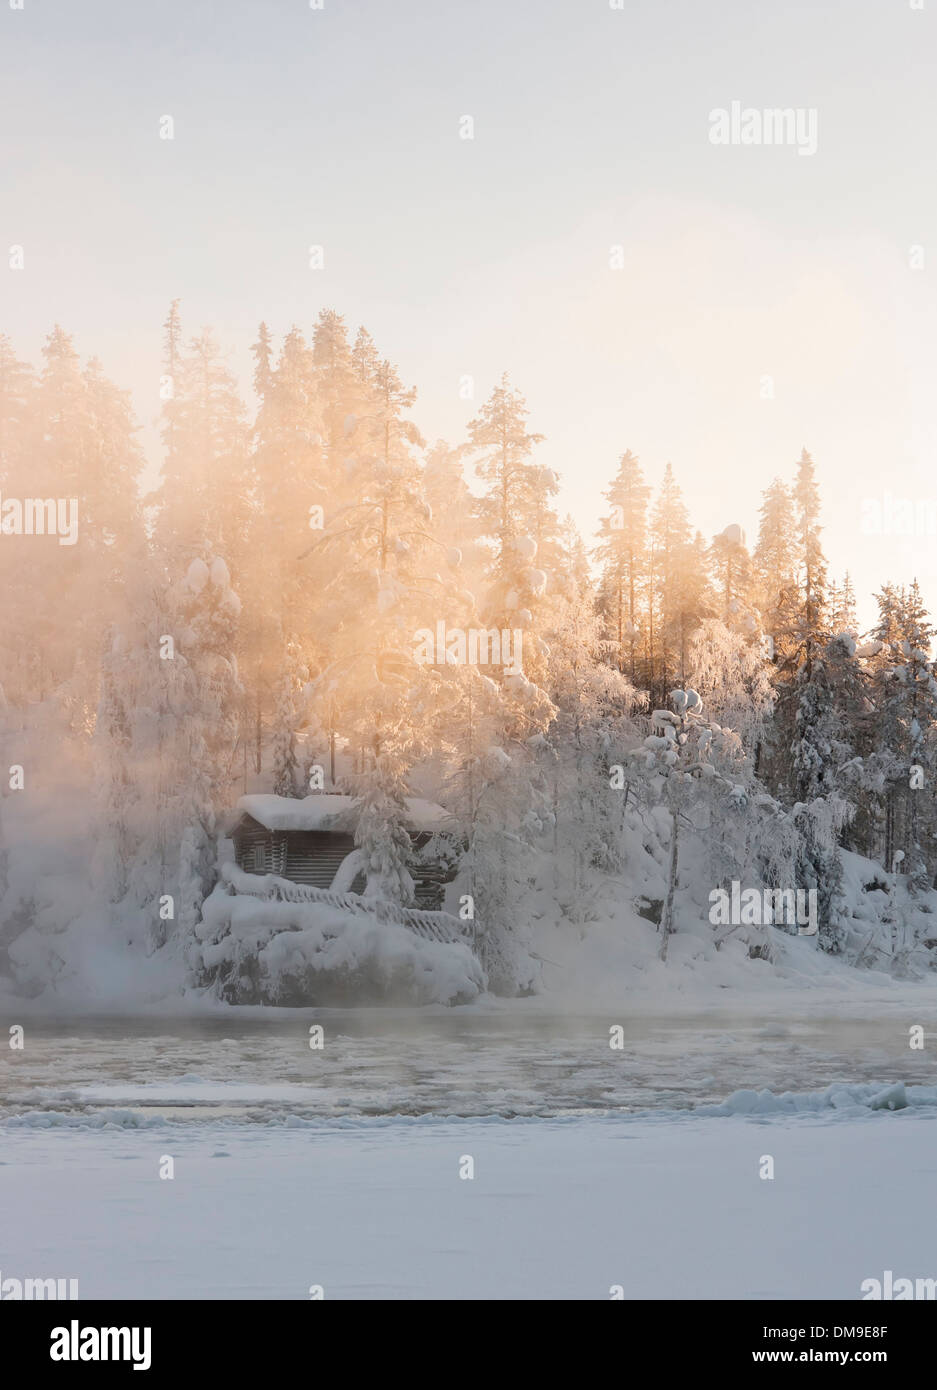 Hütte in der Nähe von Wasser und nebligen Wald im Winter in Lappland, Finnland Stockfoto